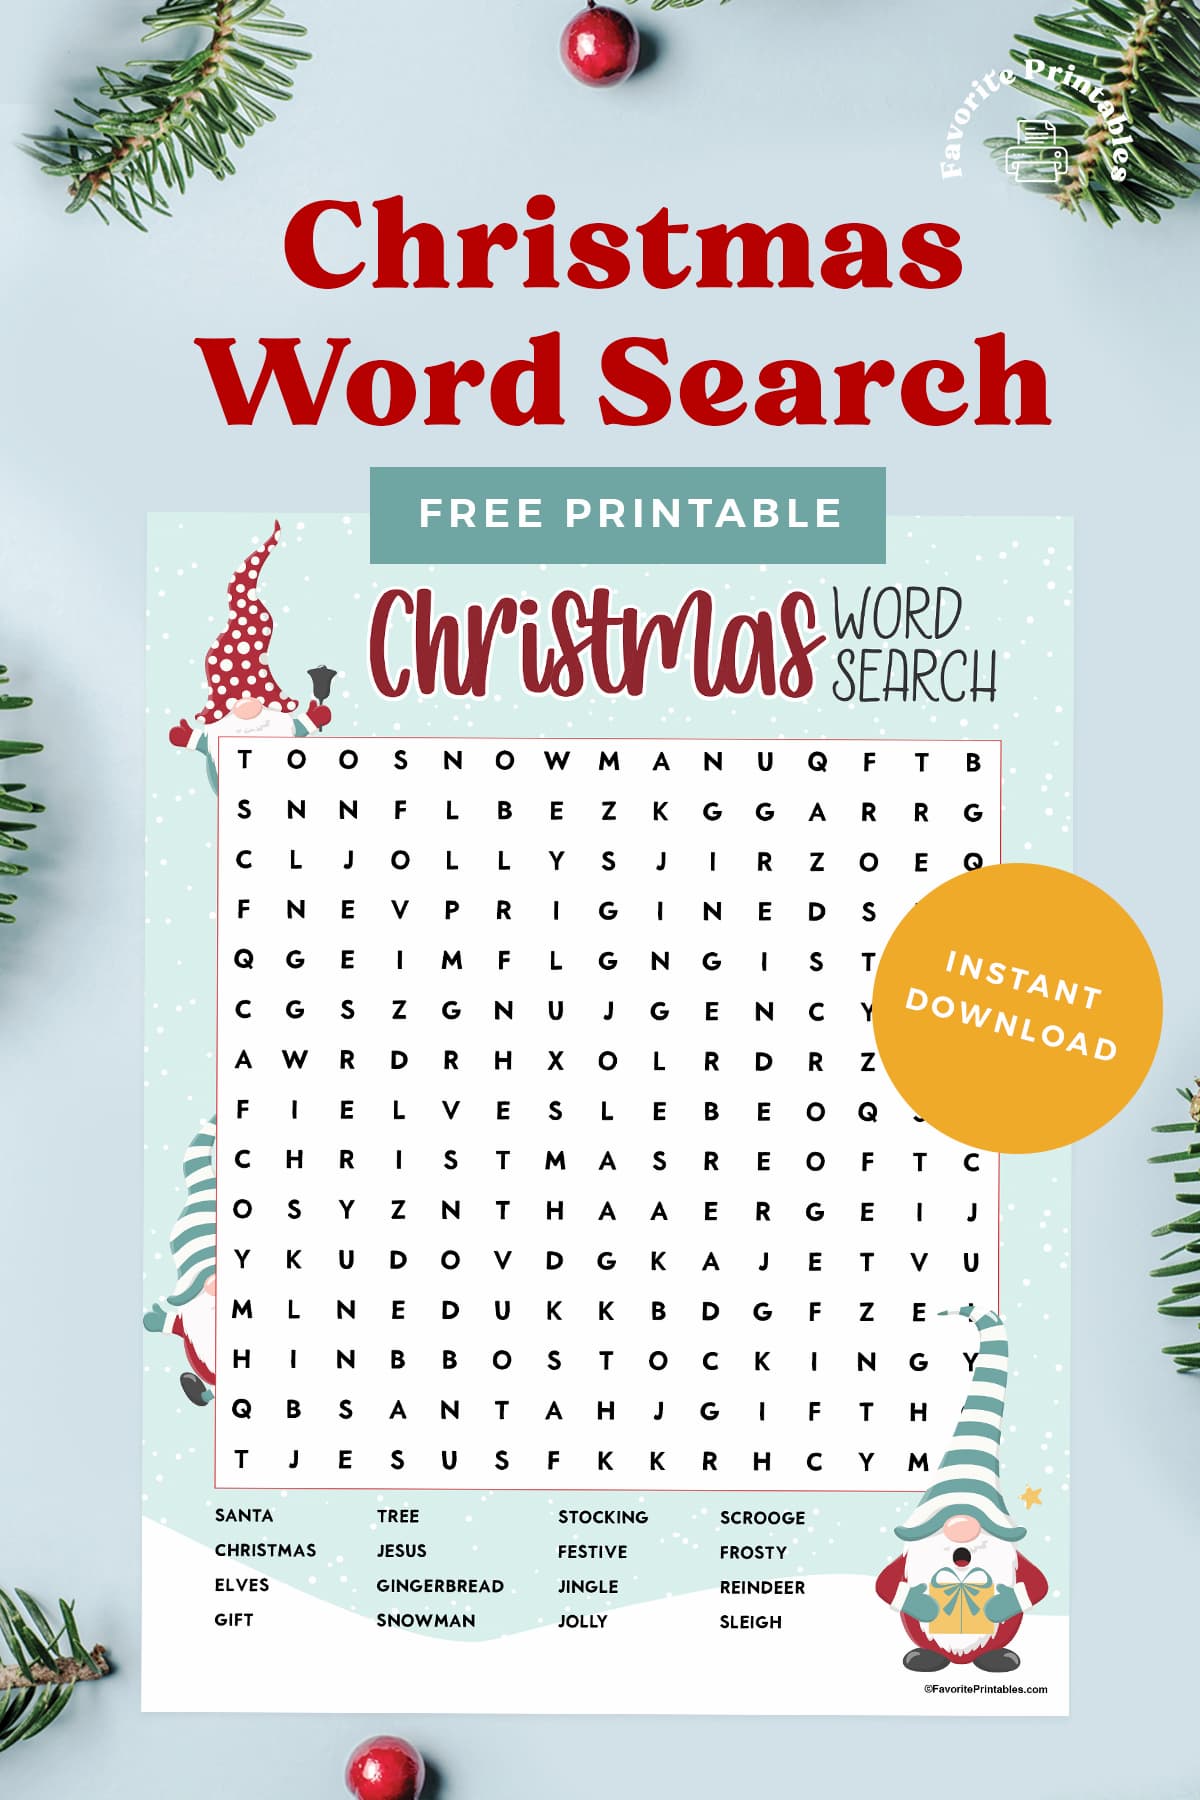 Free printable Christmas word search pin.